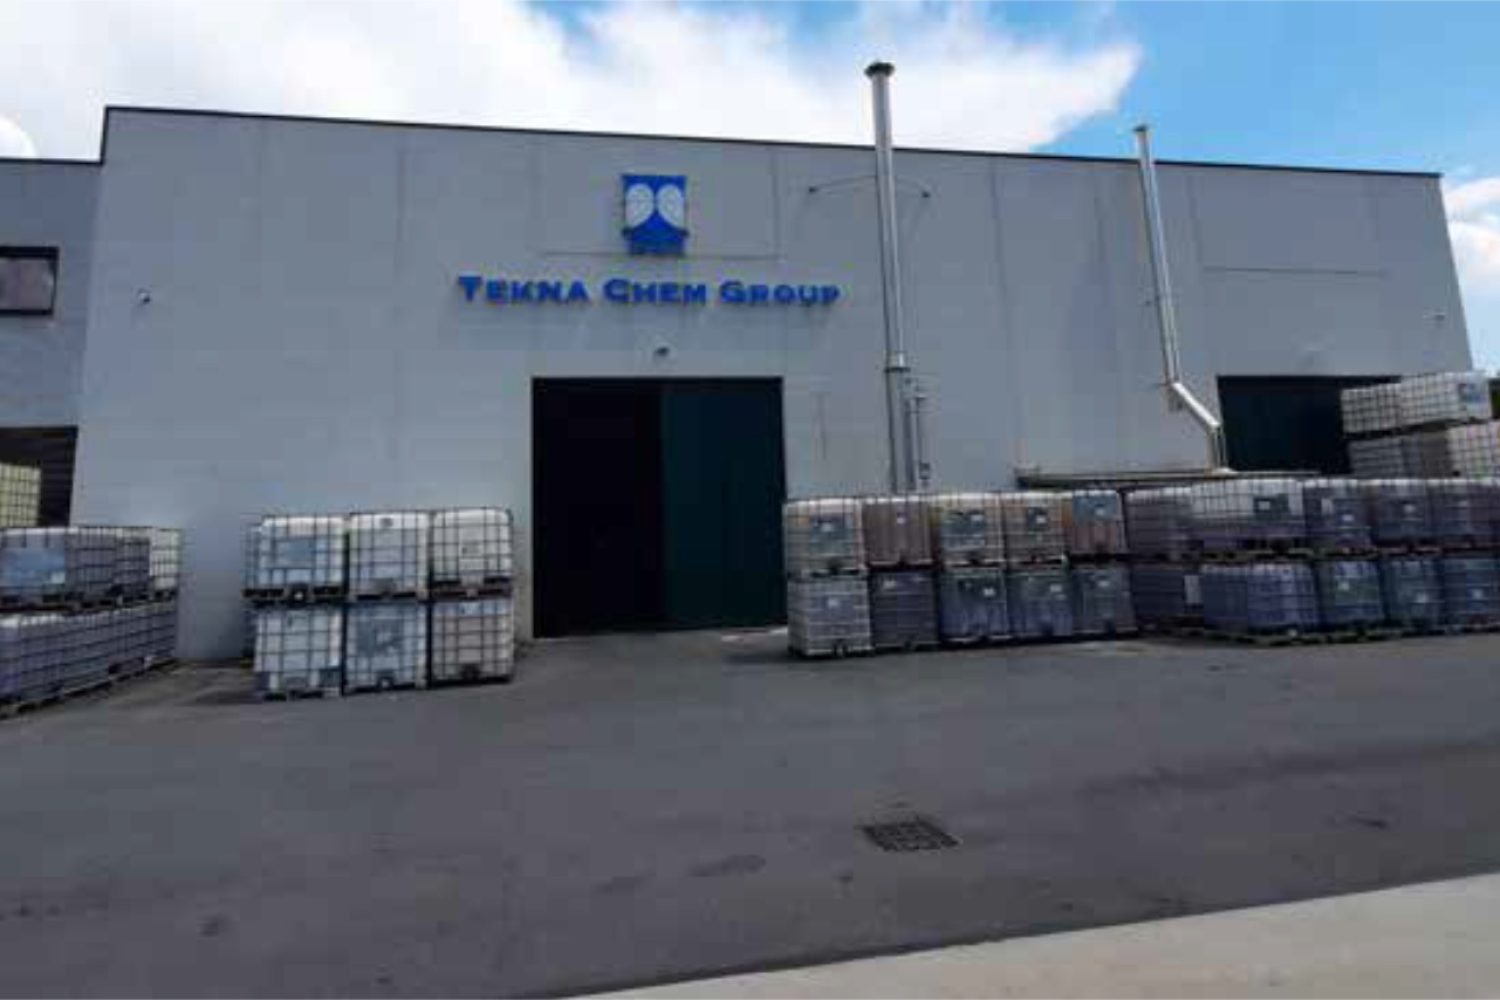 La sede Tekna Chem di Renate Brianza (MB): è il polo formativo-tecnologico-industriale che da quasi 18 anni dà vita alla linea Aeternum